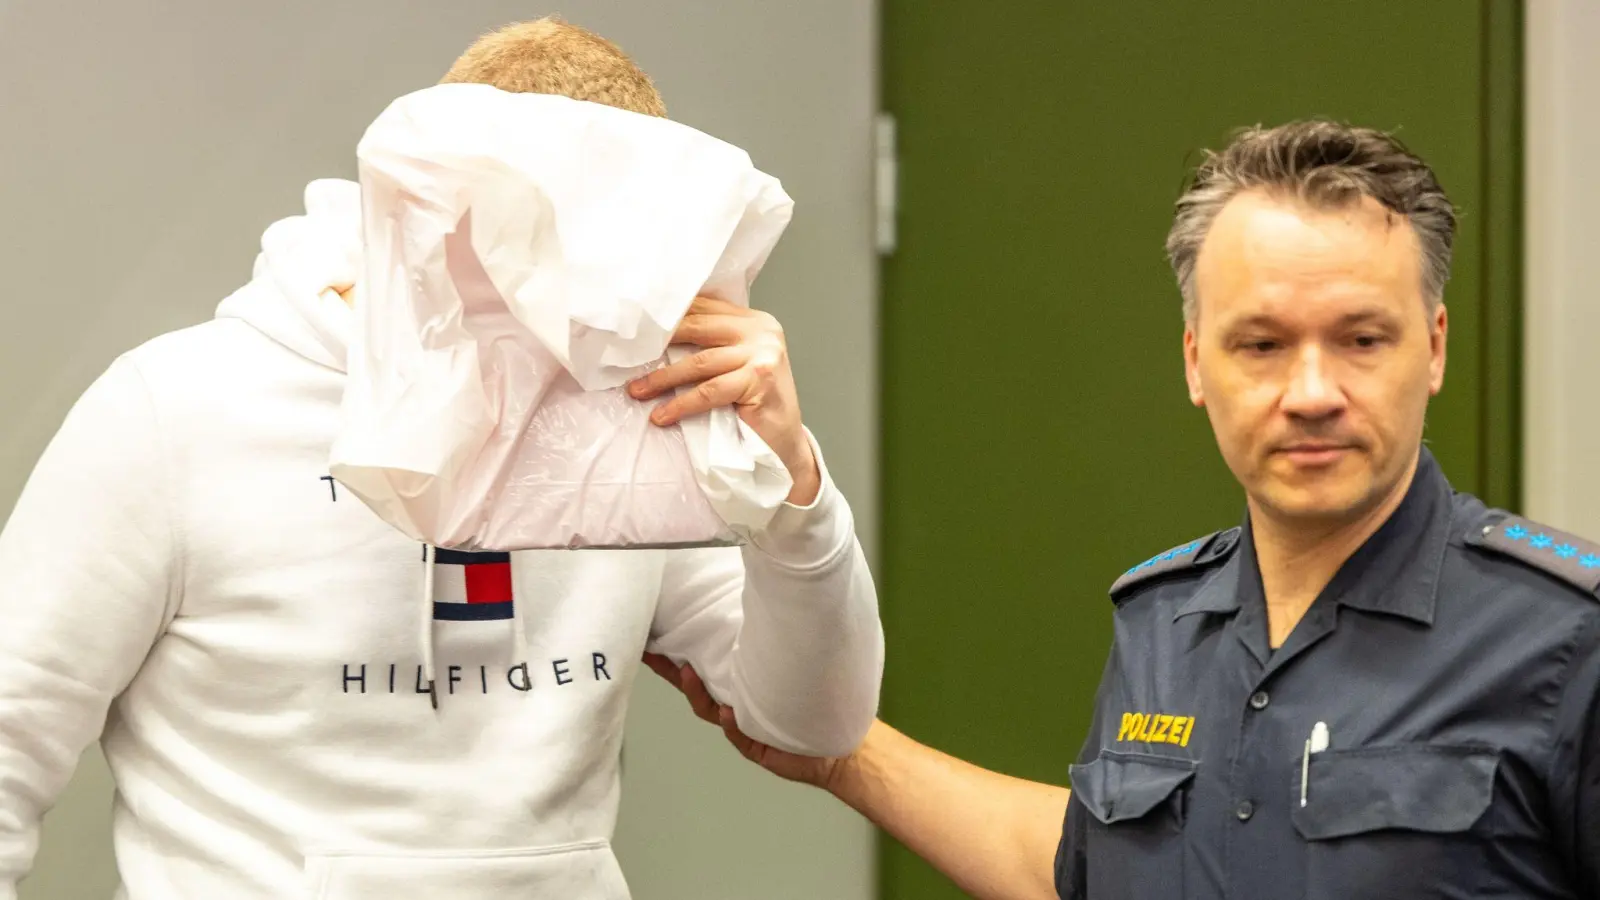 Der wegen Mordes an zwei Patienten angeklagte Krankenpfleger (l) ist zu lebenslanger Haft verurteilt worden. (Foto: Lennart Preiss/dpa)